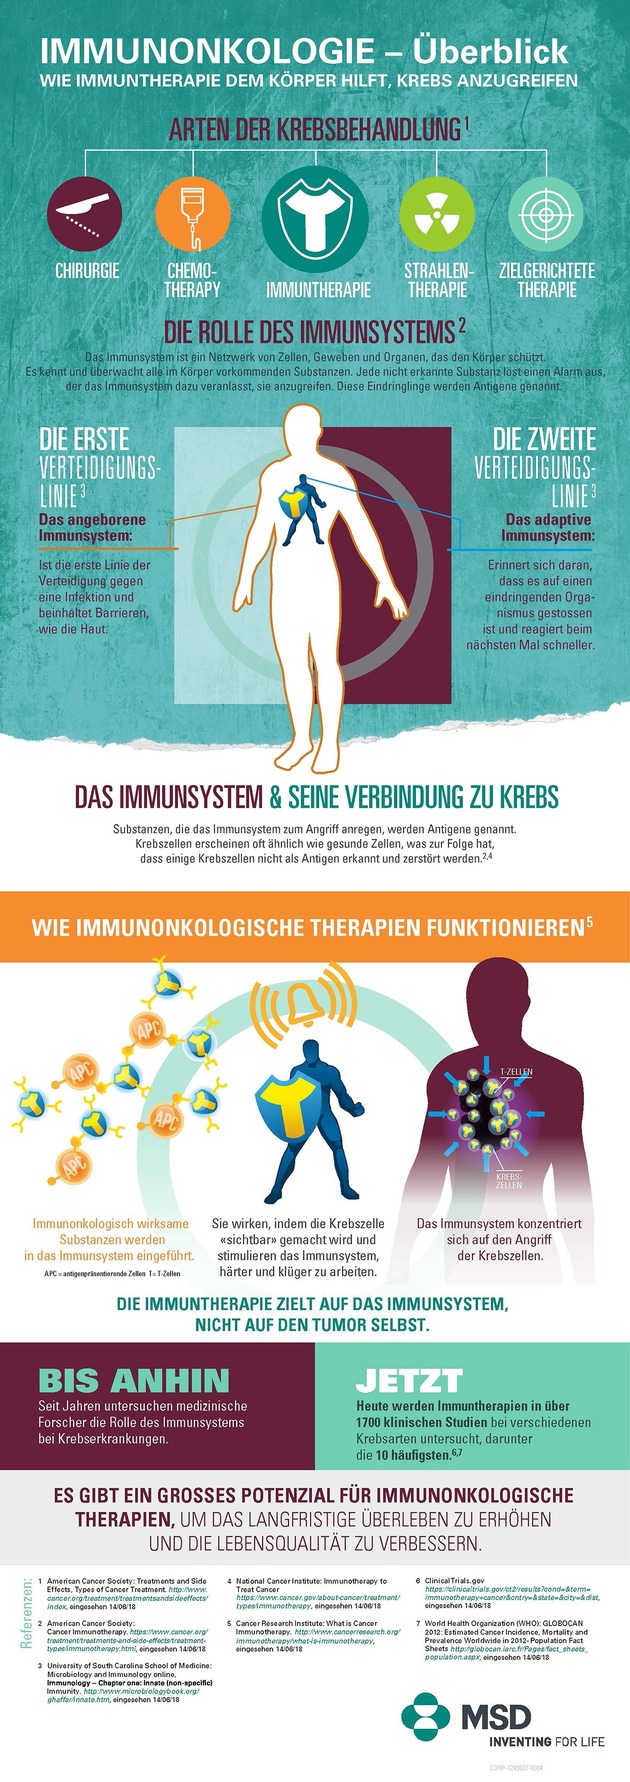 MSD setzt weltweit einen Forschungsschwerpunkt im Bereich der Immunonkologie